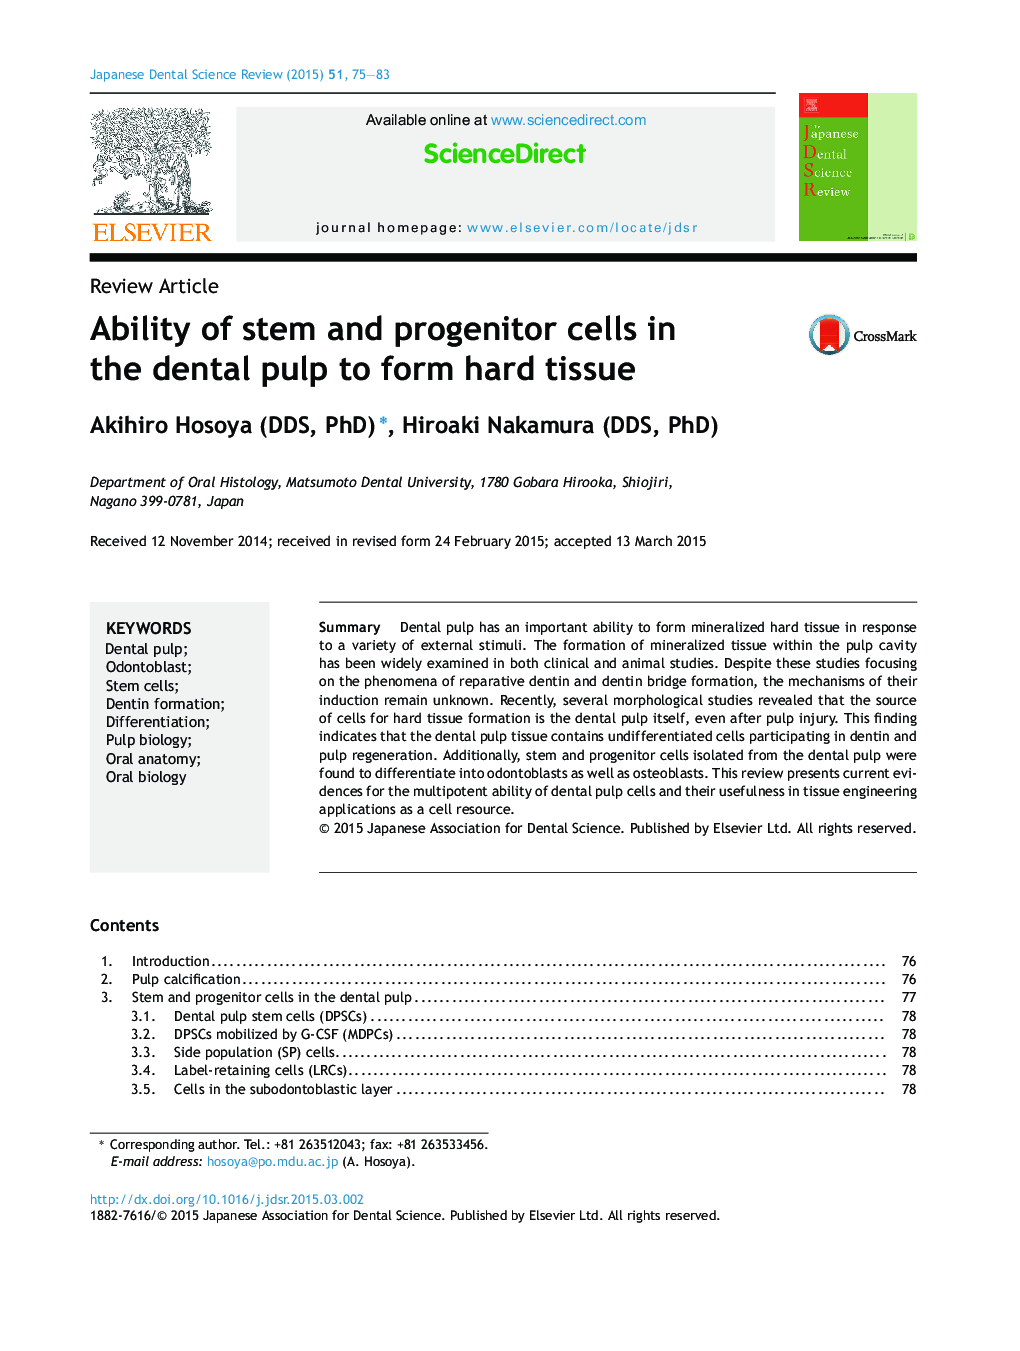 توانایی سلول های ساقه و پروژکتور در پالپ دندان برای ایجاد بافت سخت 